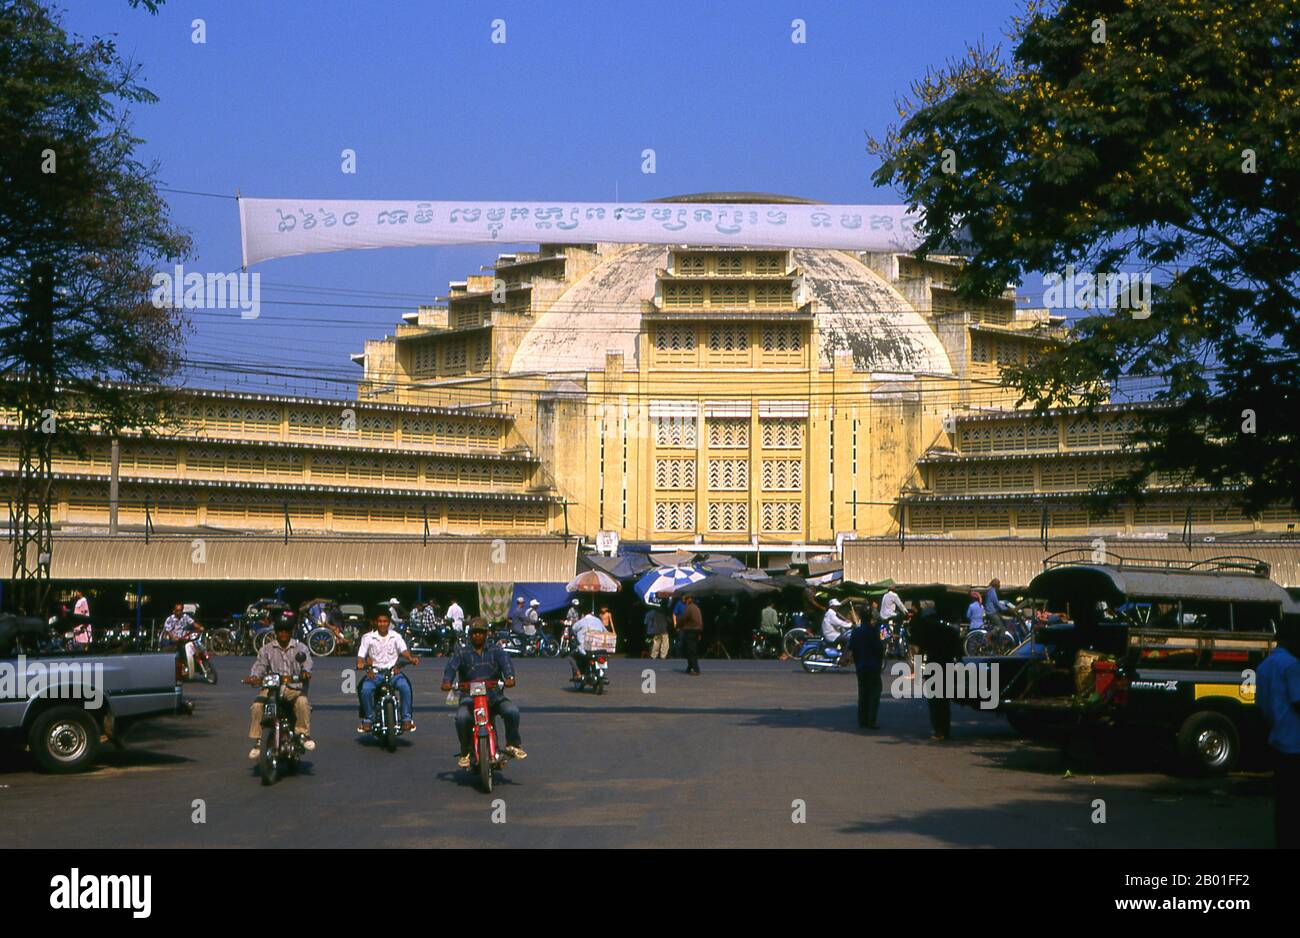 Cambogia: Il mercato centrale Art Deco (conosciuto in Khmer come Psar Thmei o nuovo mercato), Phnom Penh. Phnom Penh si trova sul lato occidentale del fiume Mekong nel punto in cui è Unito dal fiume SAP e si divide nel fiume Bassac, facendo un punto di incontro di quattro grandi corsi d'acqua noti in Cambogia come Chatomuk o 'quattro facce'. E 'stato centrale per la vita cambogiana da poco dopo l'abbandono di Angkor a metà del 14th ° secolo ed è stata la capitale dal 1866. Foto Stock